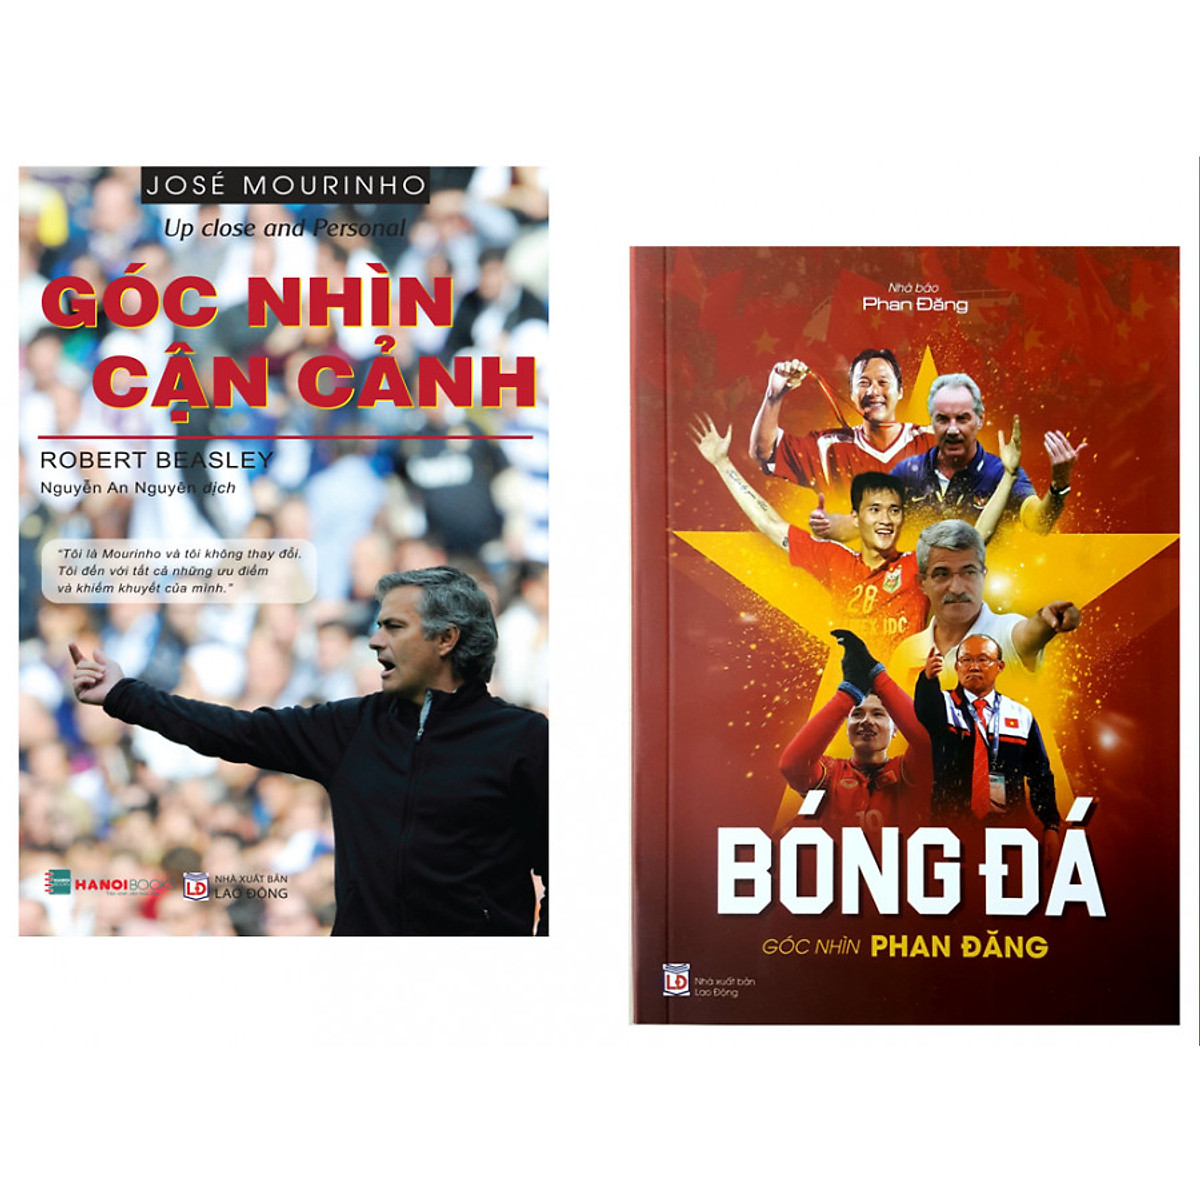 Combo Phan Đăng - Góc nhìn bóng đá; Jose Mourinho - Góc nhìn cận cảnh